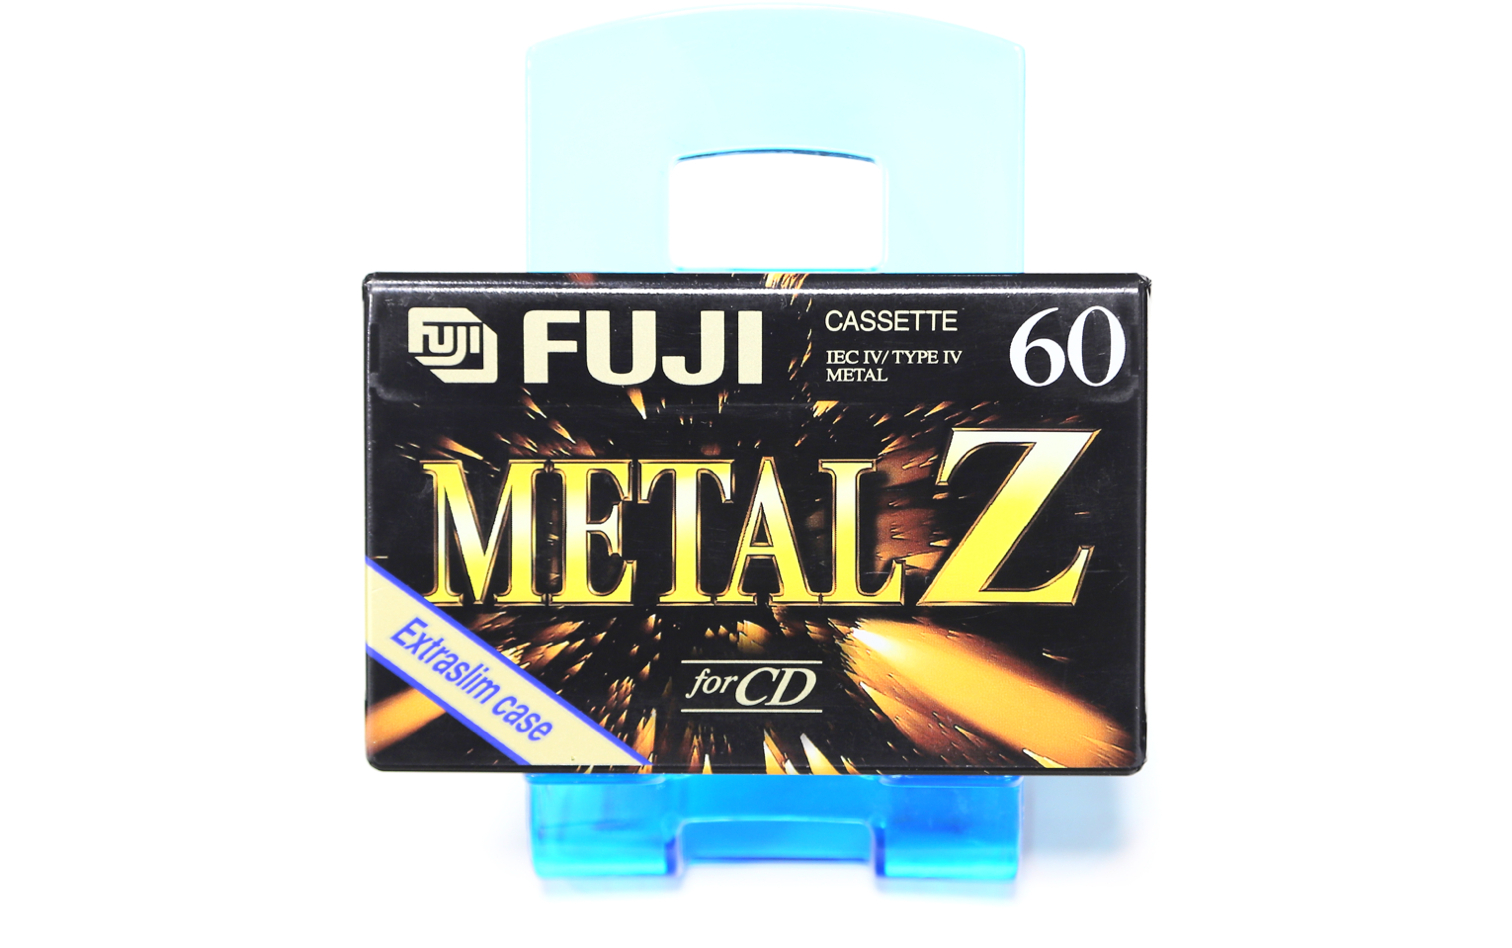 FUJI Metal Z-60 